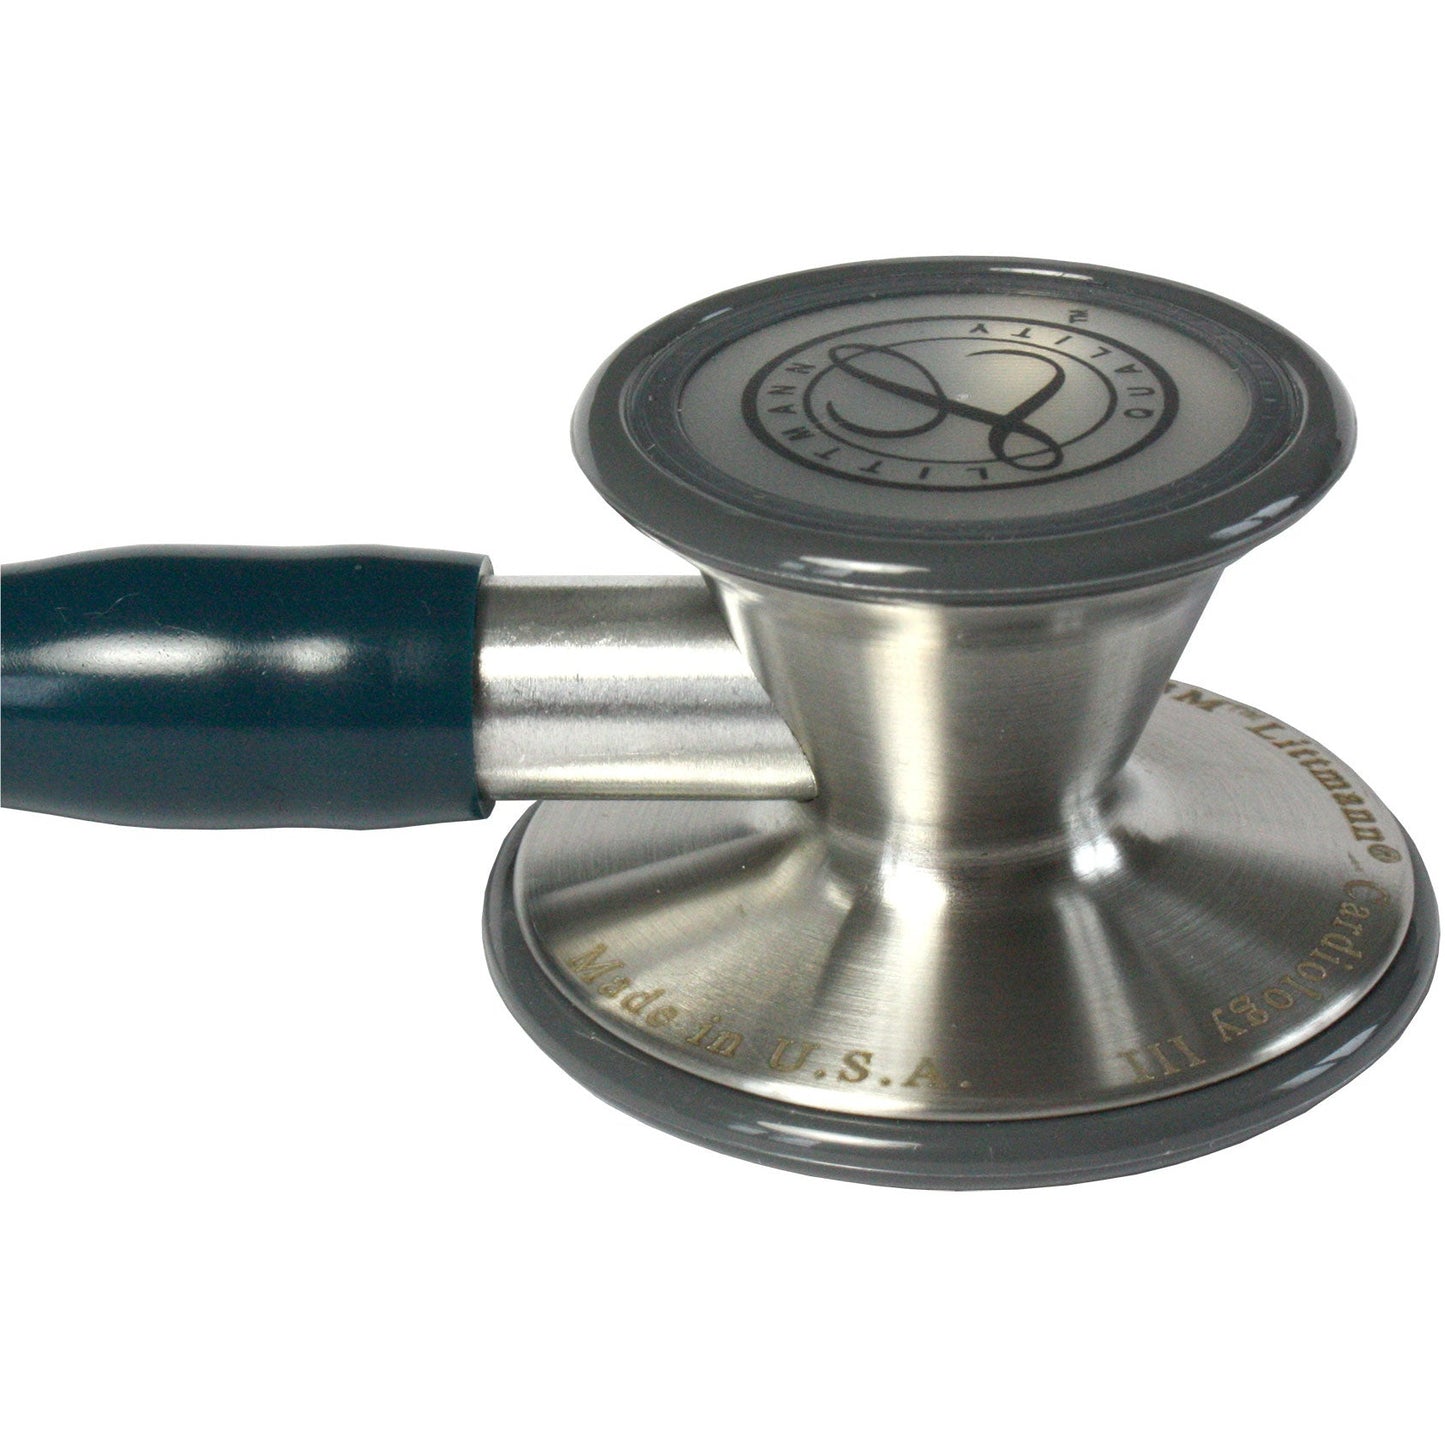 Littmann Cardiology III Stethoscope: Caribbean Blue 3138